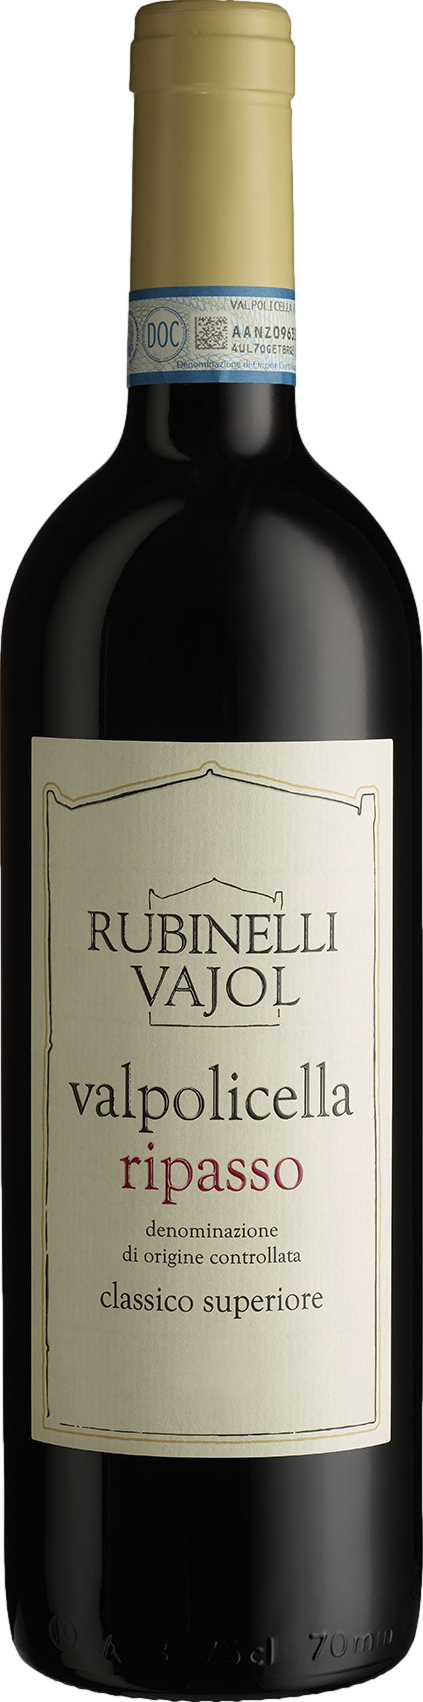 Rubinelli Vajol Valpolicella Ripasso Classico Superiore 2017 Červené 14.5% 0.75 l